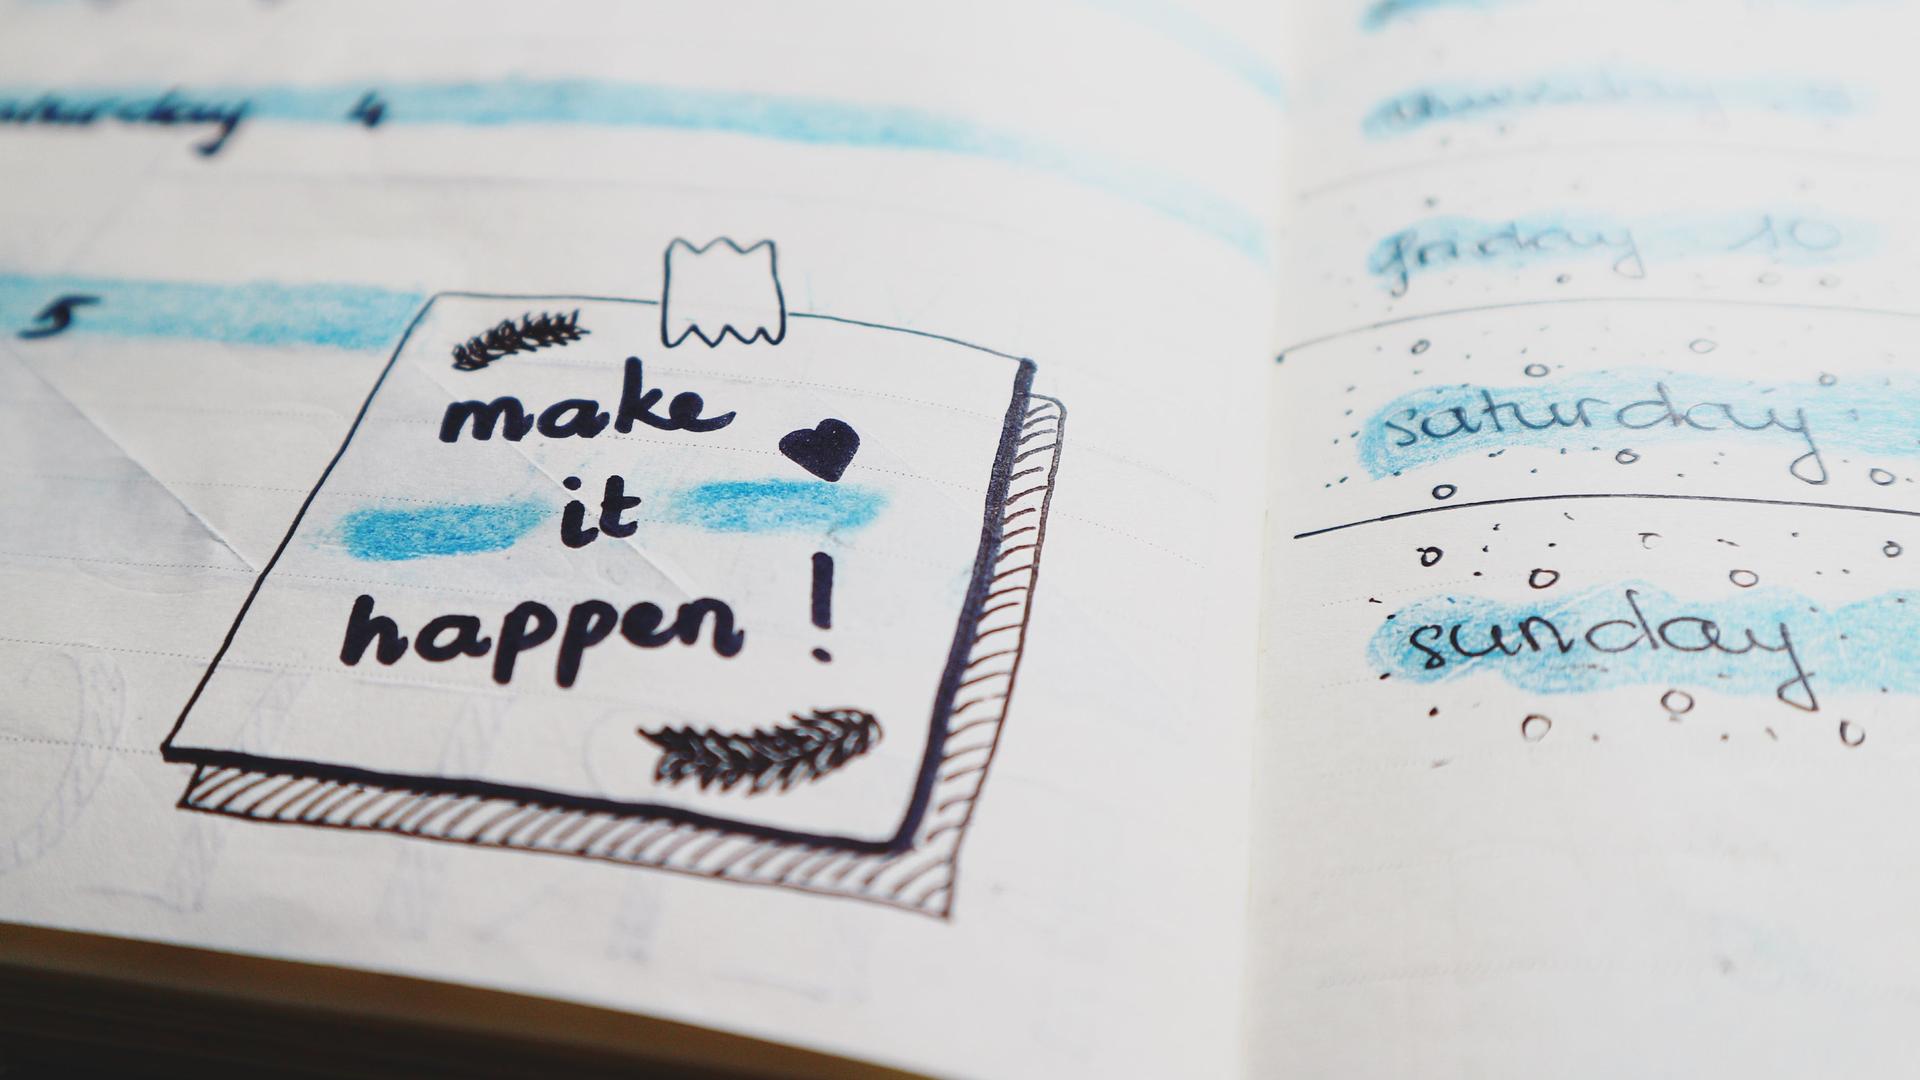 Ein aufgeschlagener Kalender enthält eine kleine Zeichung, die den Schriftzug "Make it happen" trägt. 